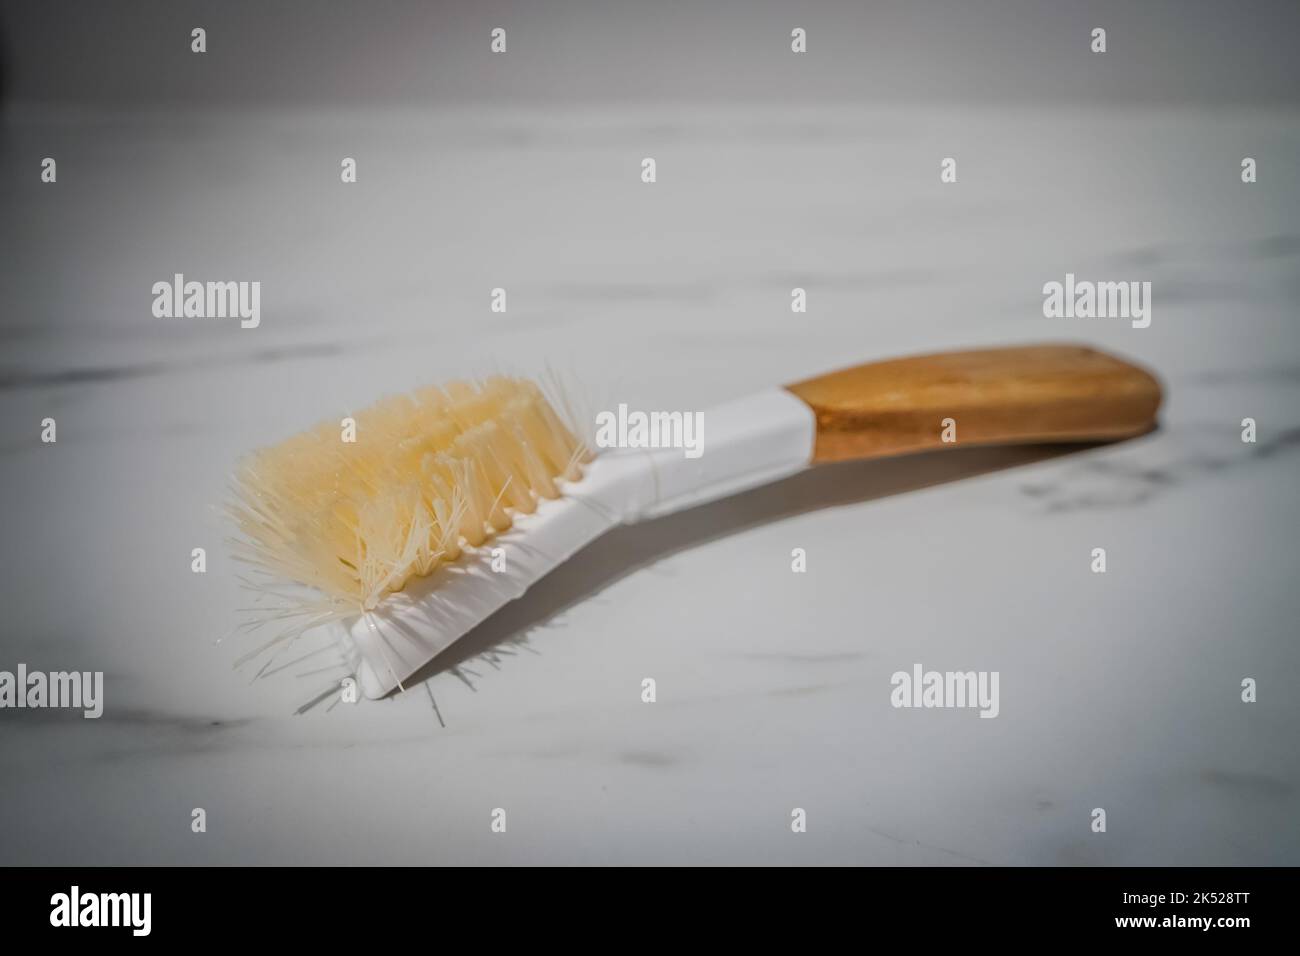 cepillo depurador de platos usado y desgastado Foto de stock